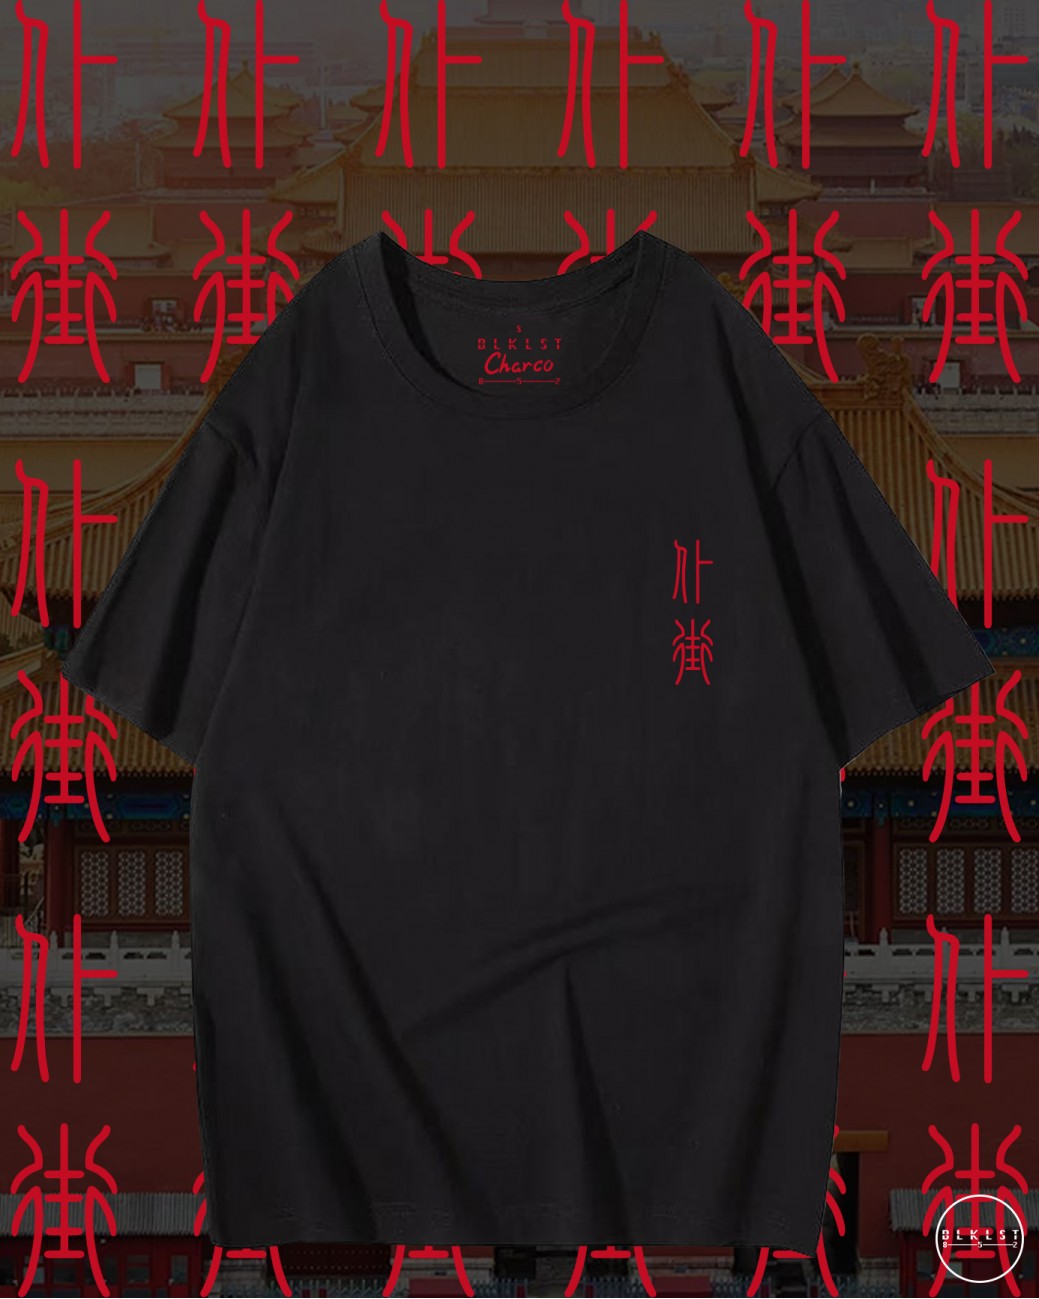 CHARCO 07 (仆街) T恤